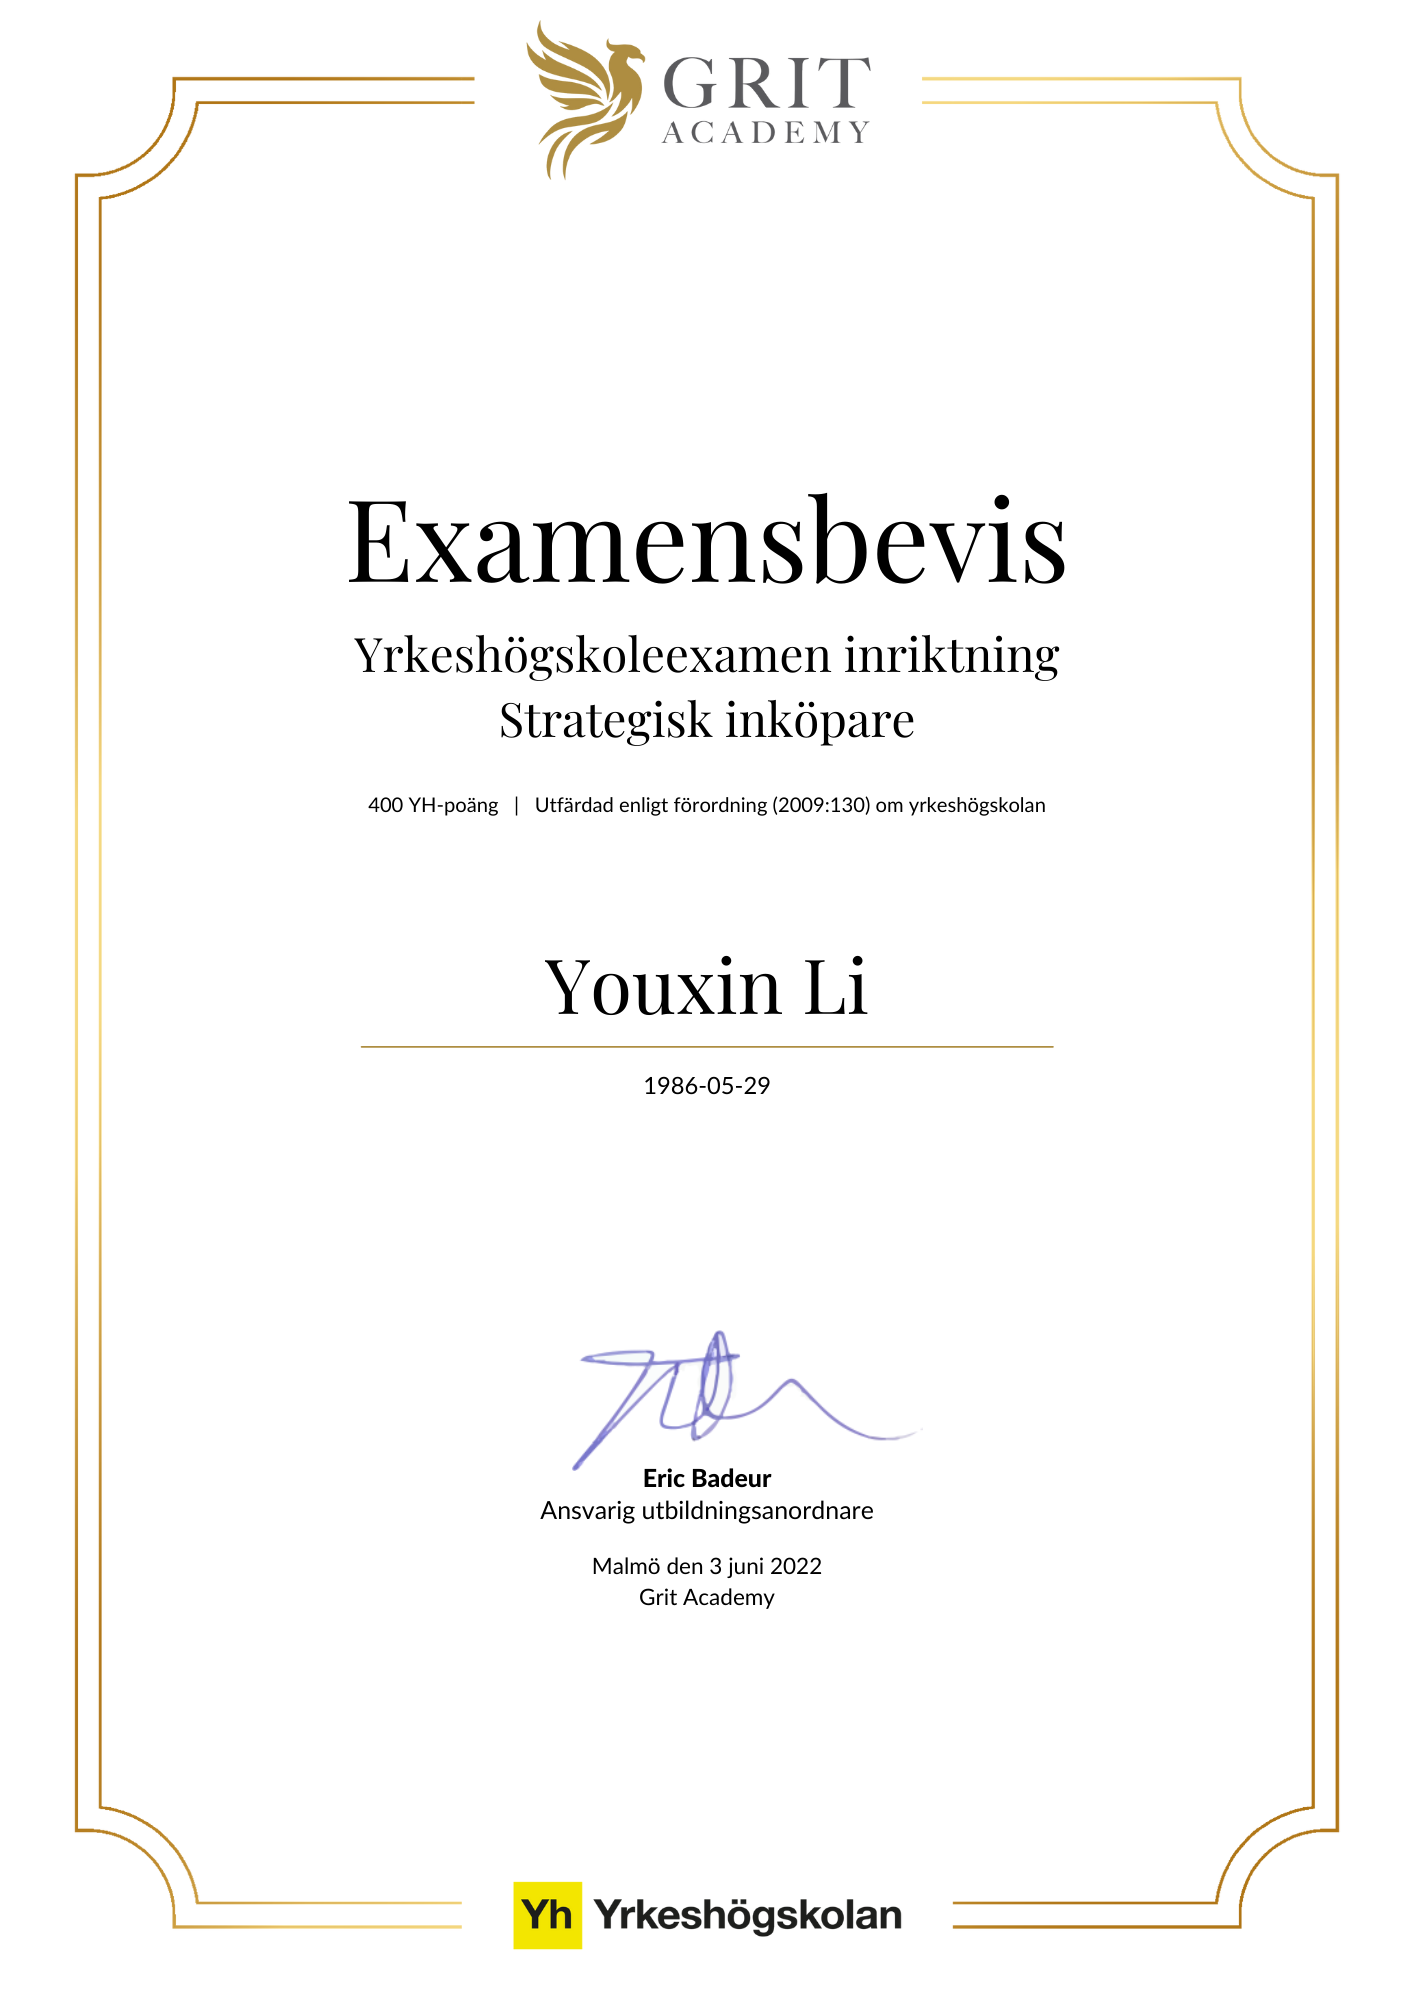 Examensbevis Youxin Li - 1